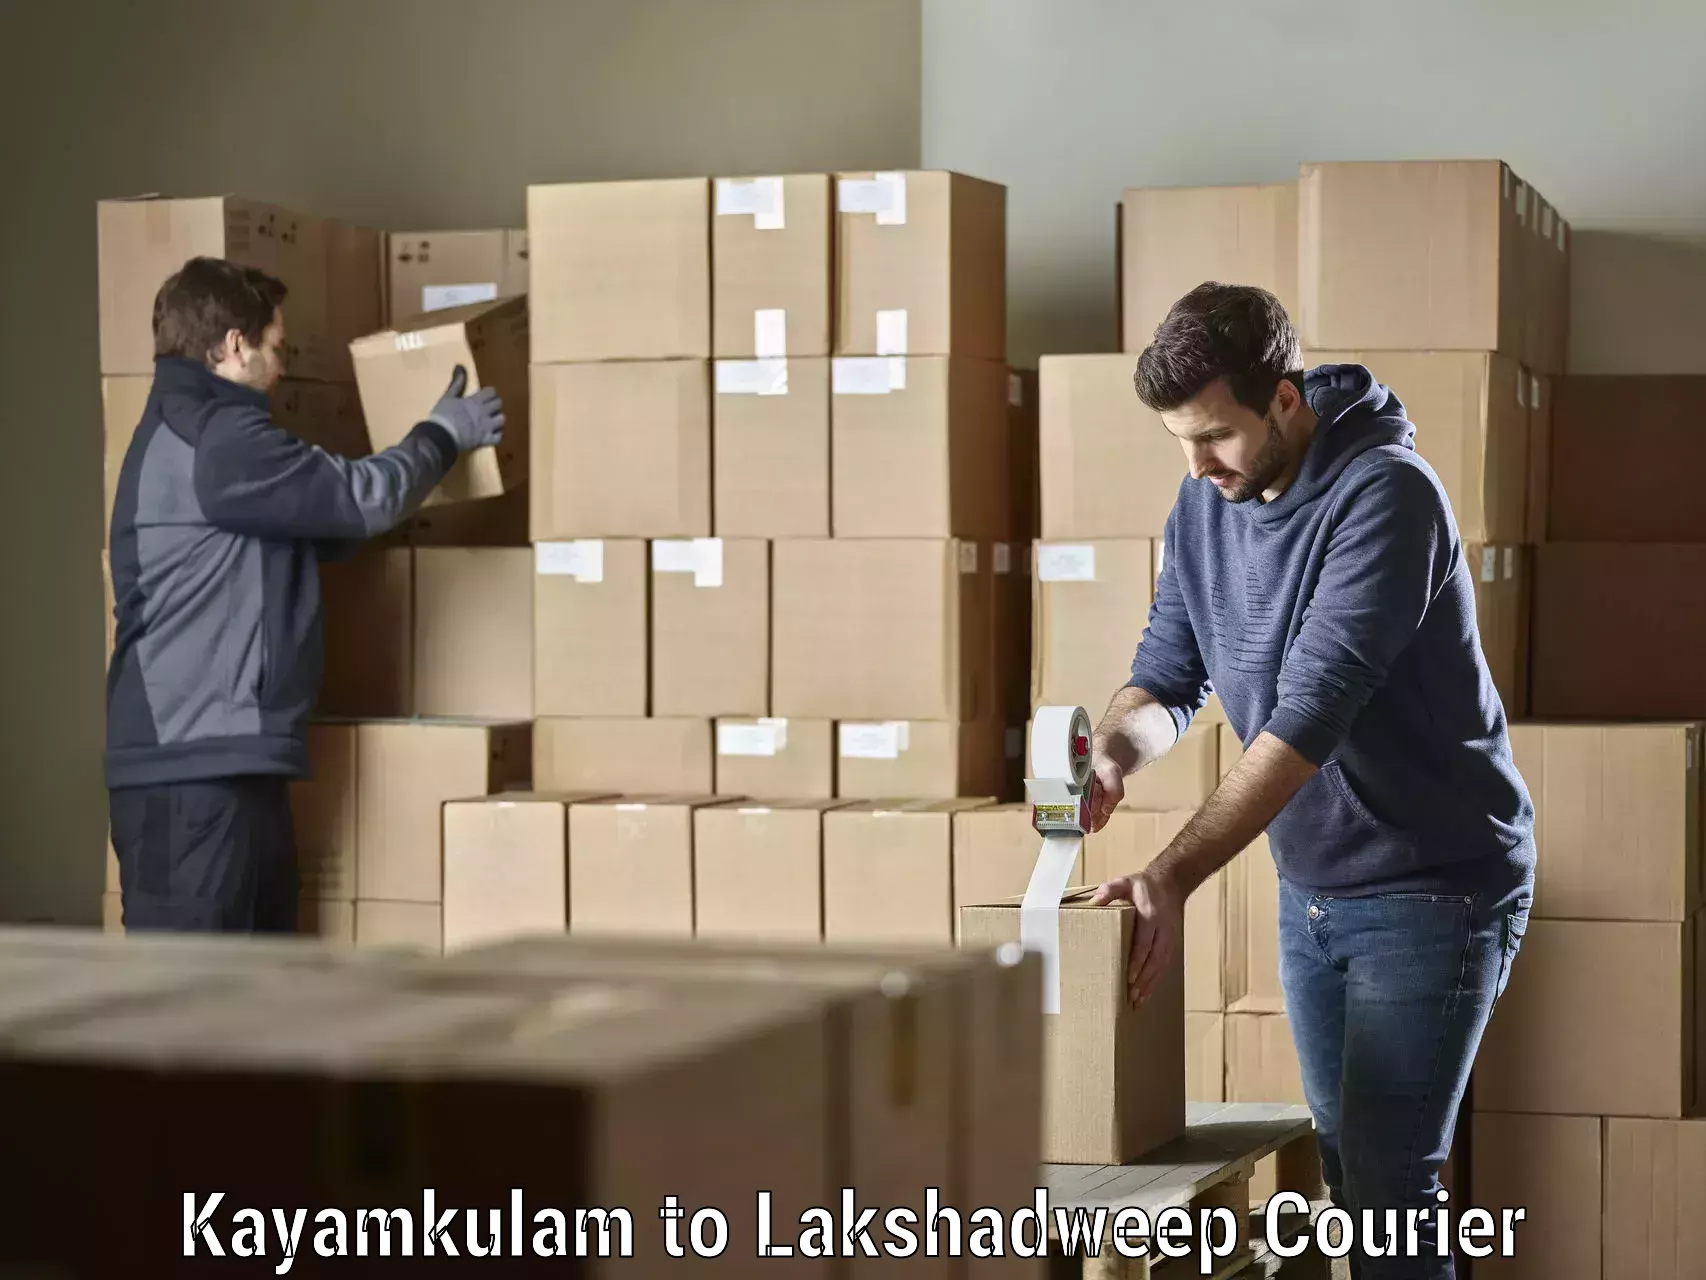 Global shipping solutions Kayamkulam to Lakshadweep